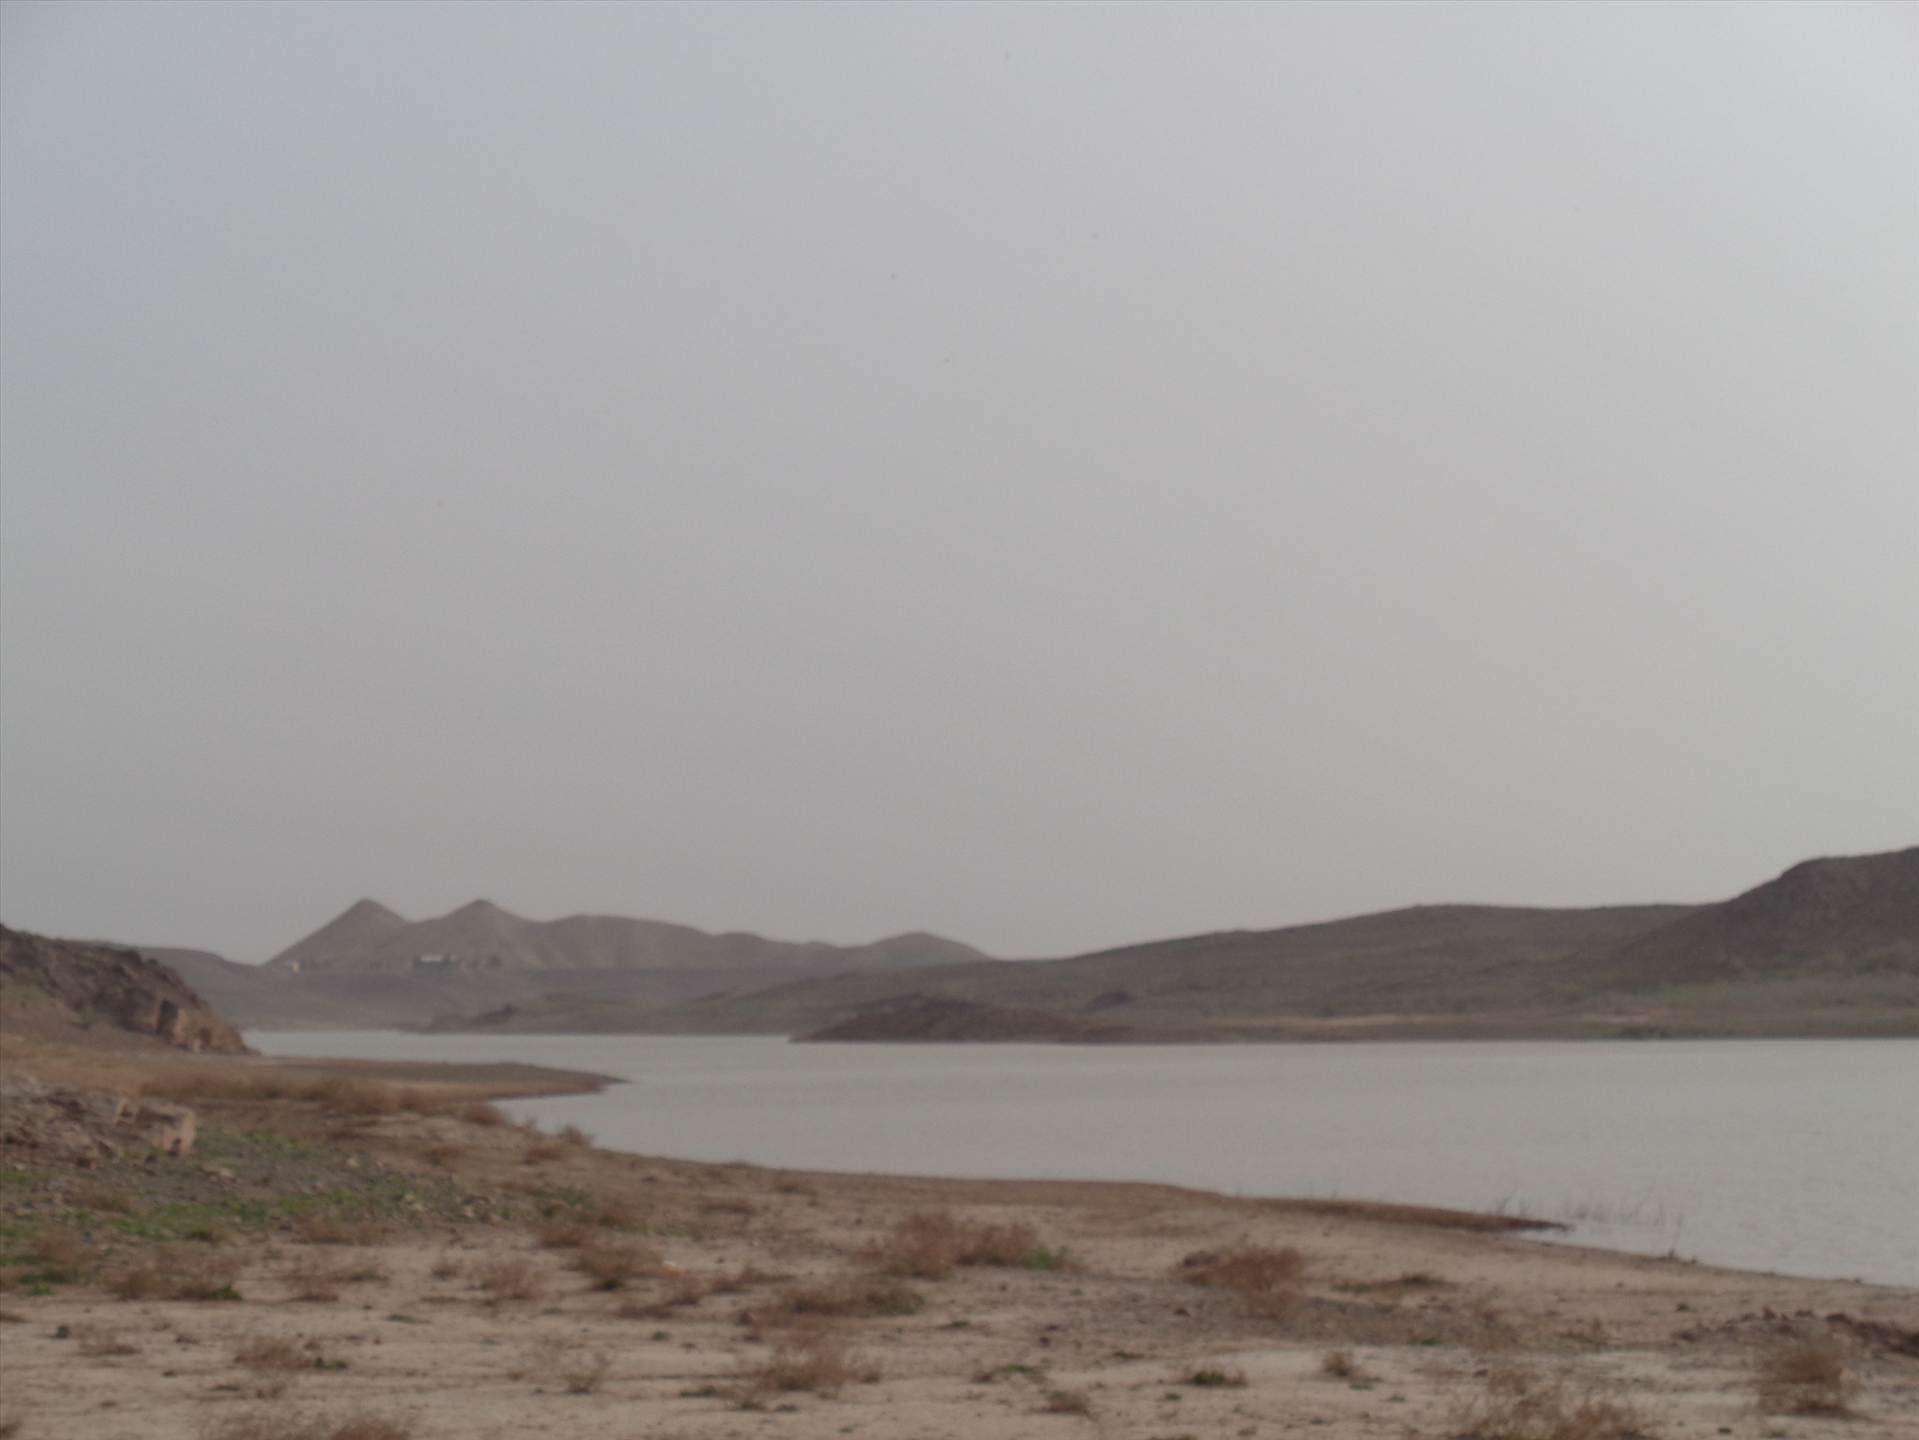 سدشهیدیعقوبی ورودی اصلی آب by mohsen dehbashi